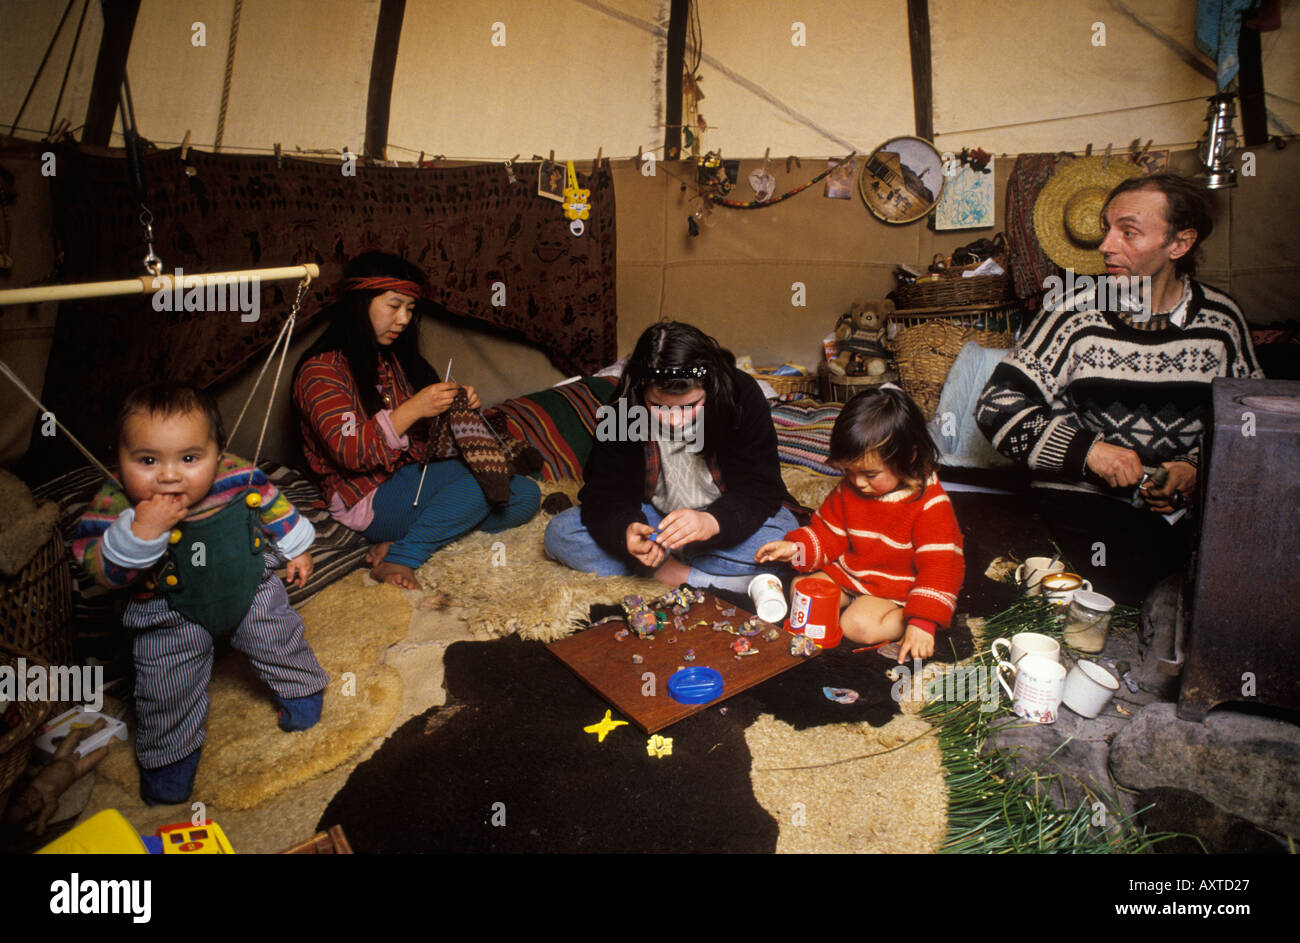 Vivre hors réseau Royaume-Uni. Tepee Valley Rev Rik Mayes et le groupe familial vivant dans un Tipi. Communauté hippie galloise des années 1980. 1985 Llandeilo, pays de Galles 1985 HOMER SYKES Banque D'Images